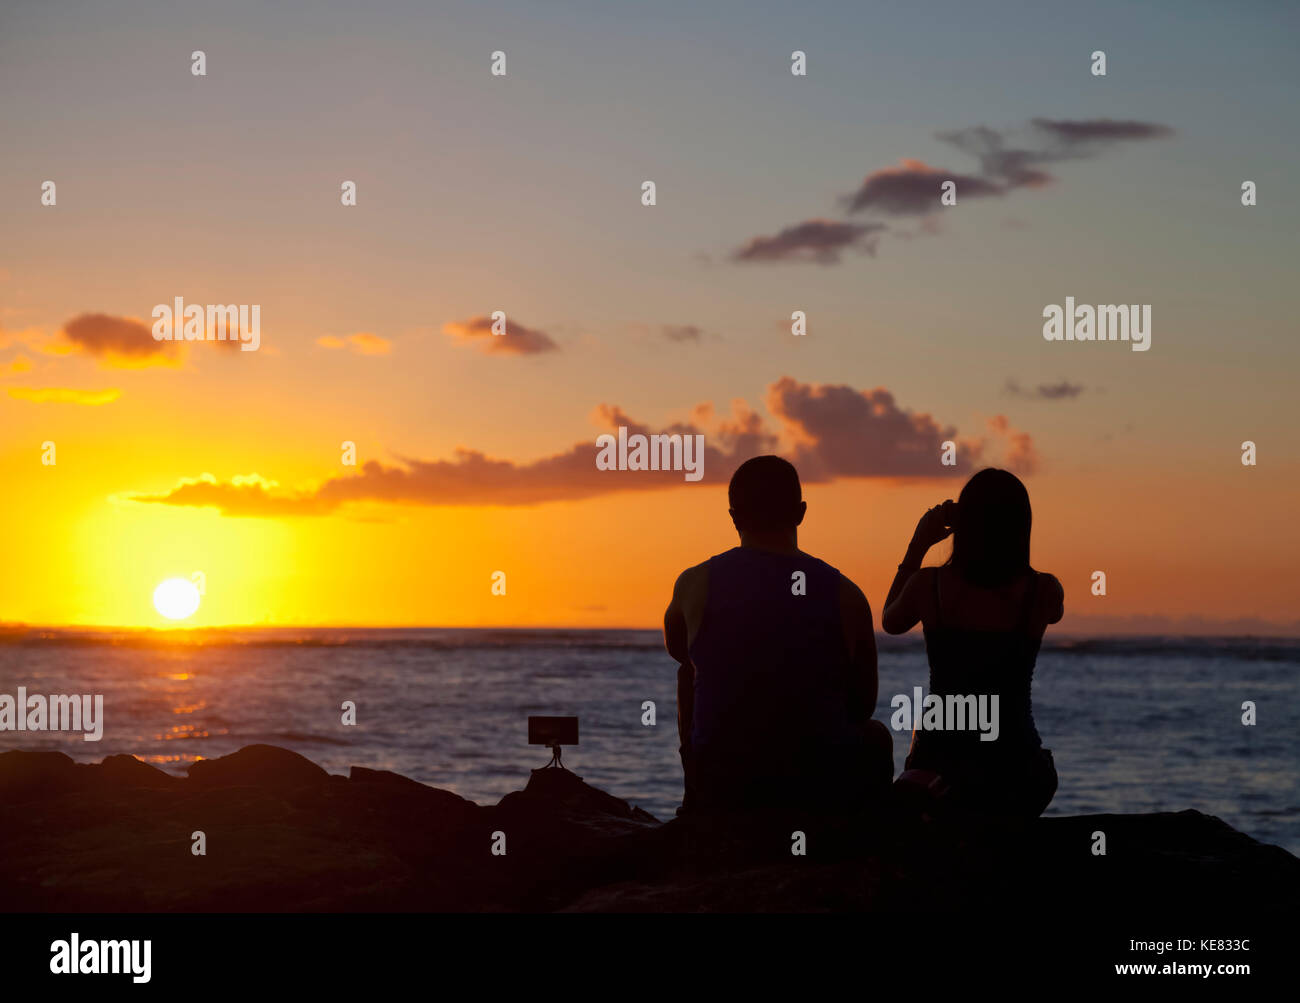 Silhouette Dun Couple à Prendre Des Photos Et Regarder Le